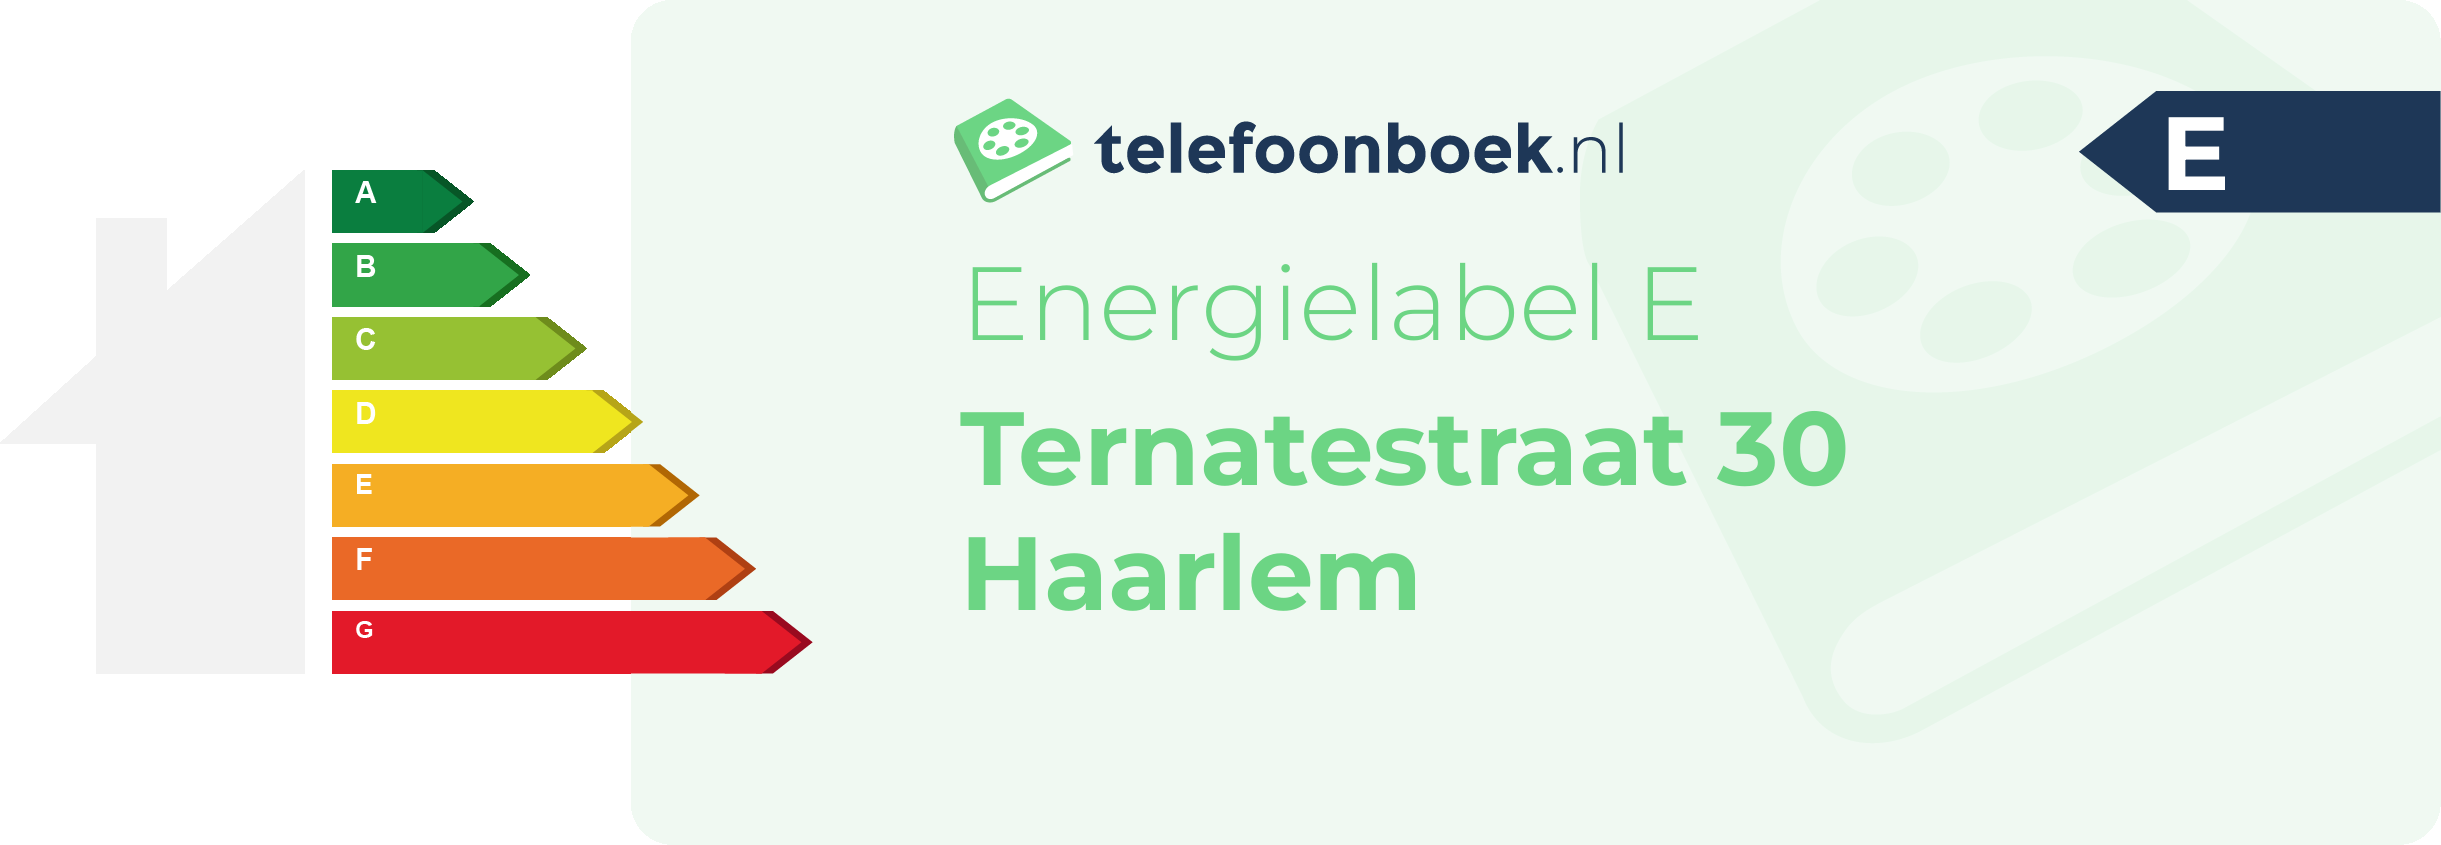 Energielabel Ternatestraat 30 Haarlem